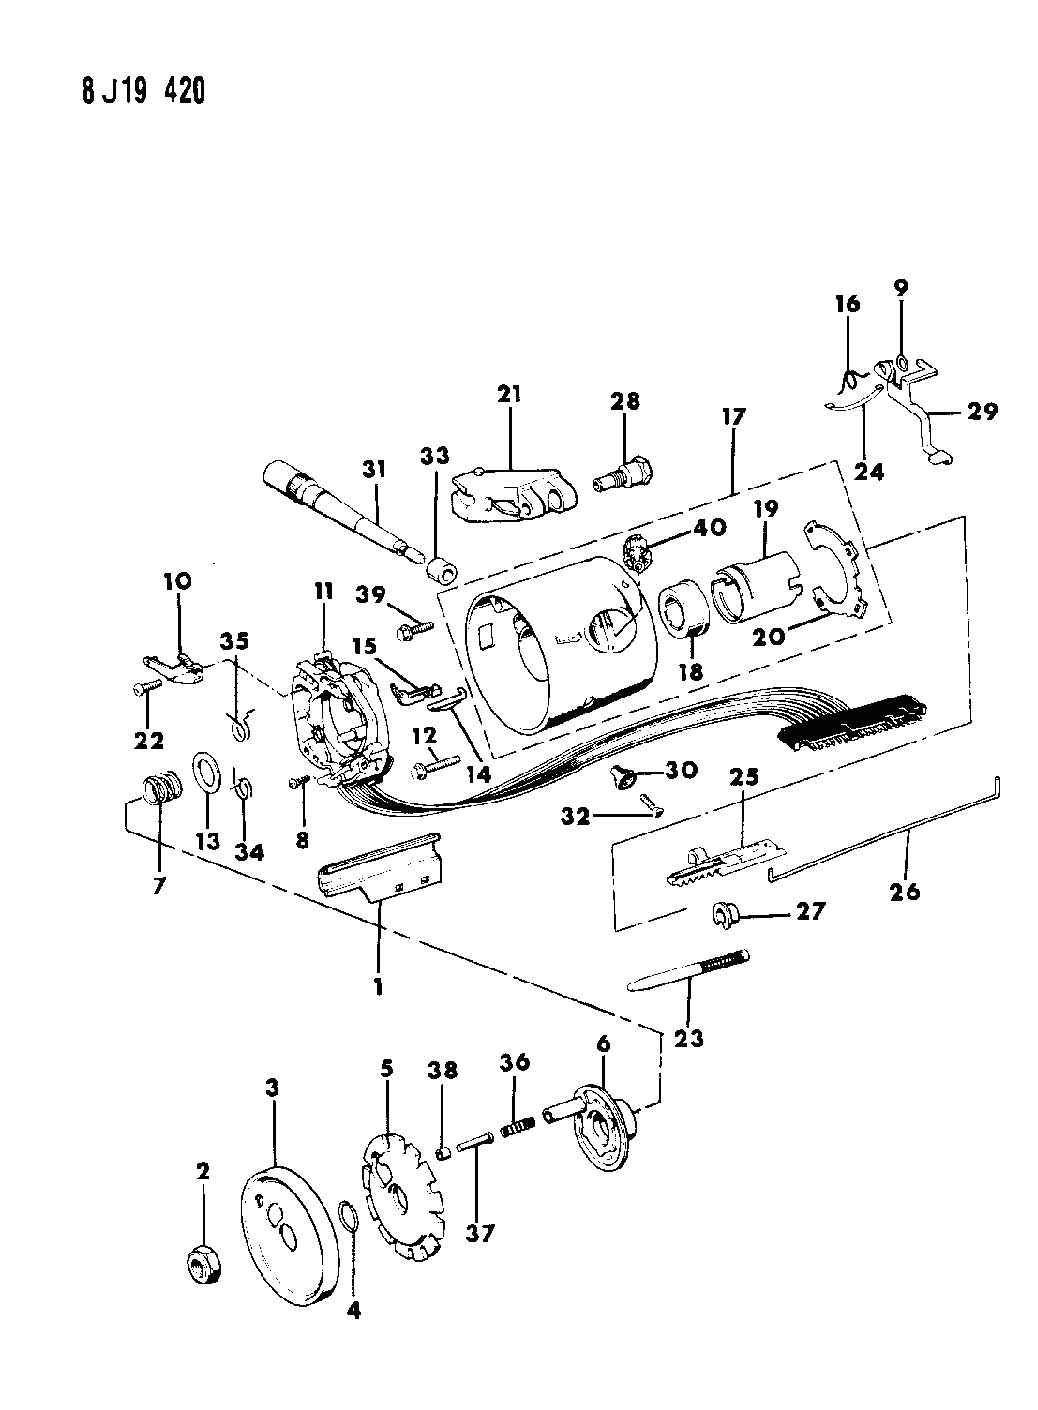 yj steering column wiring diagram